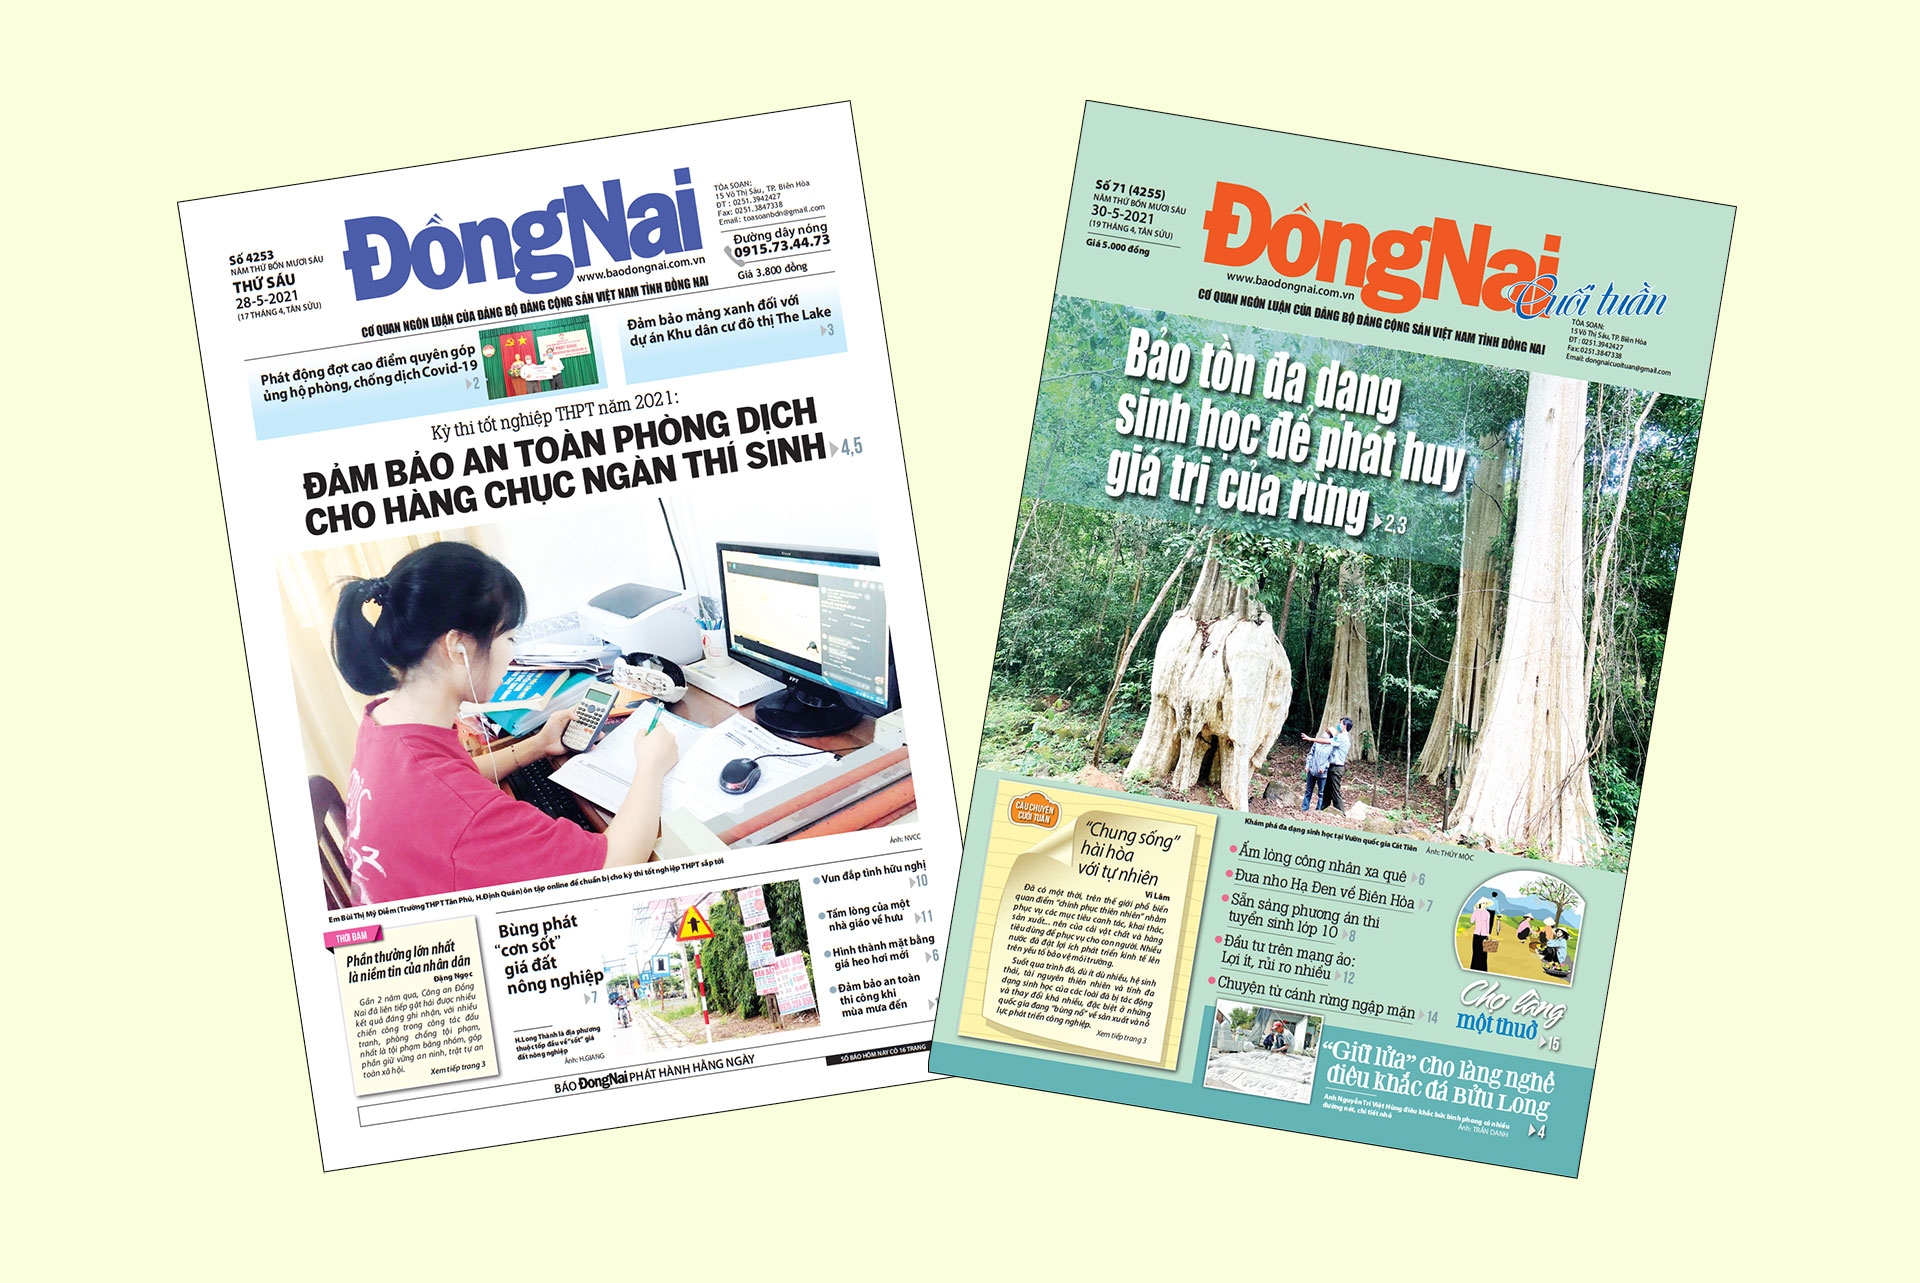 Bìa Báo Đồng Nai ra ngày 28-5 và Đồng Nai cuối tuần số 71